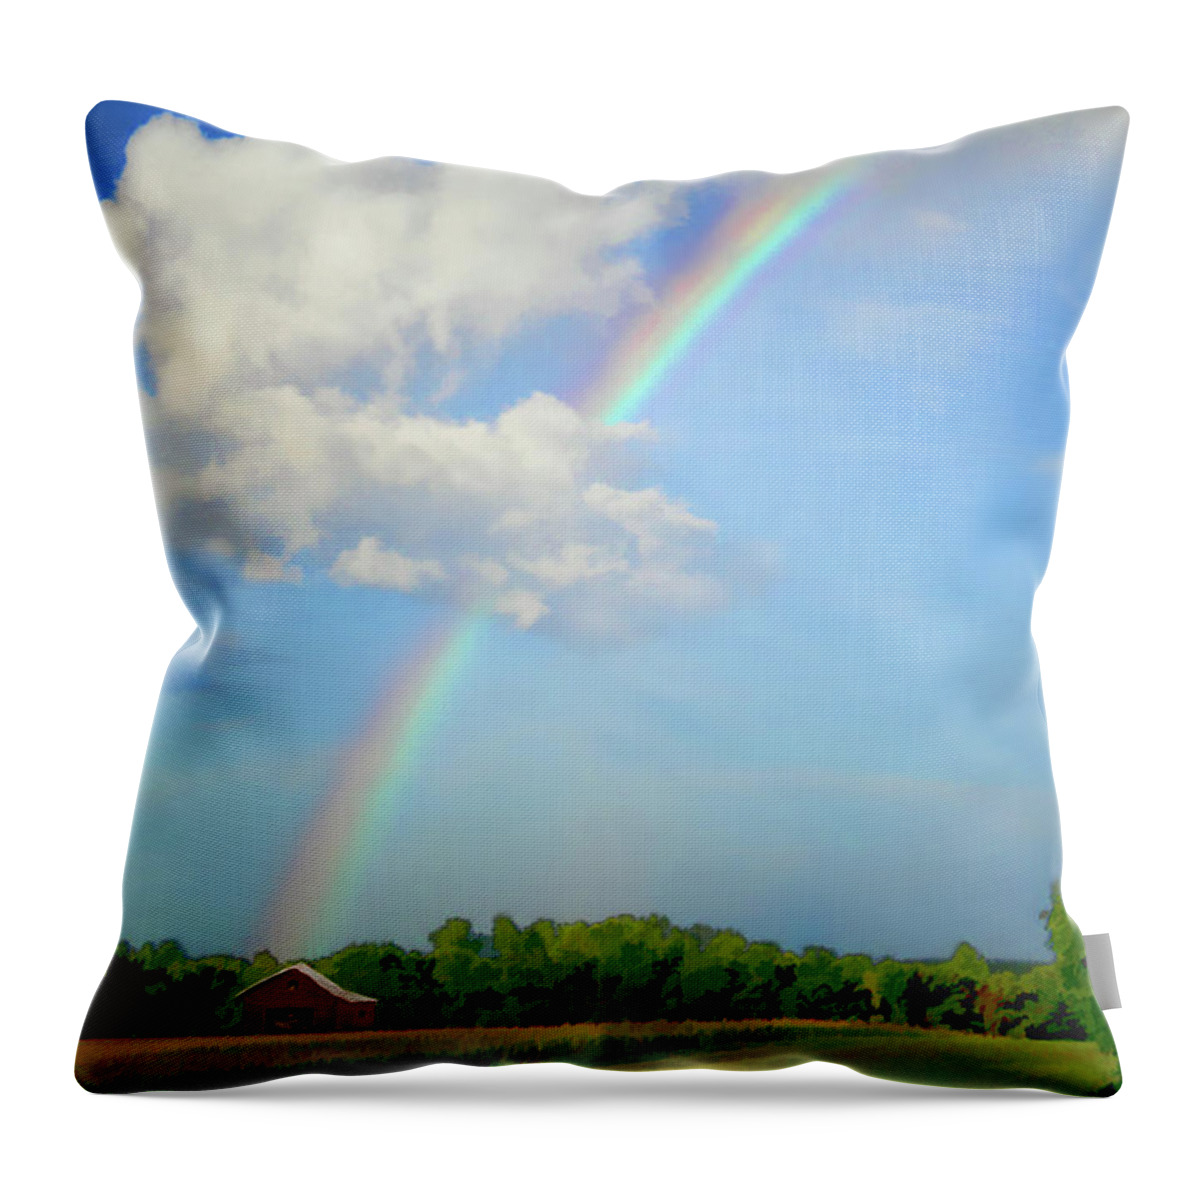 Rainbow Throw Pillow featuring the digital art Rainbow on the farm by Bonnie Willis